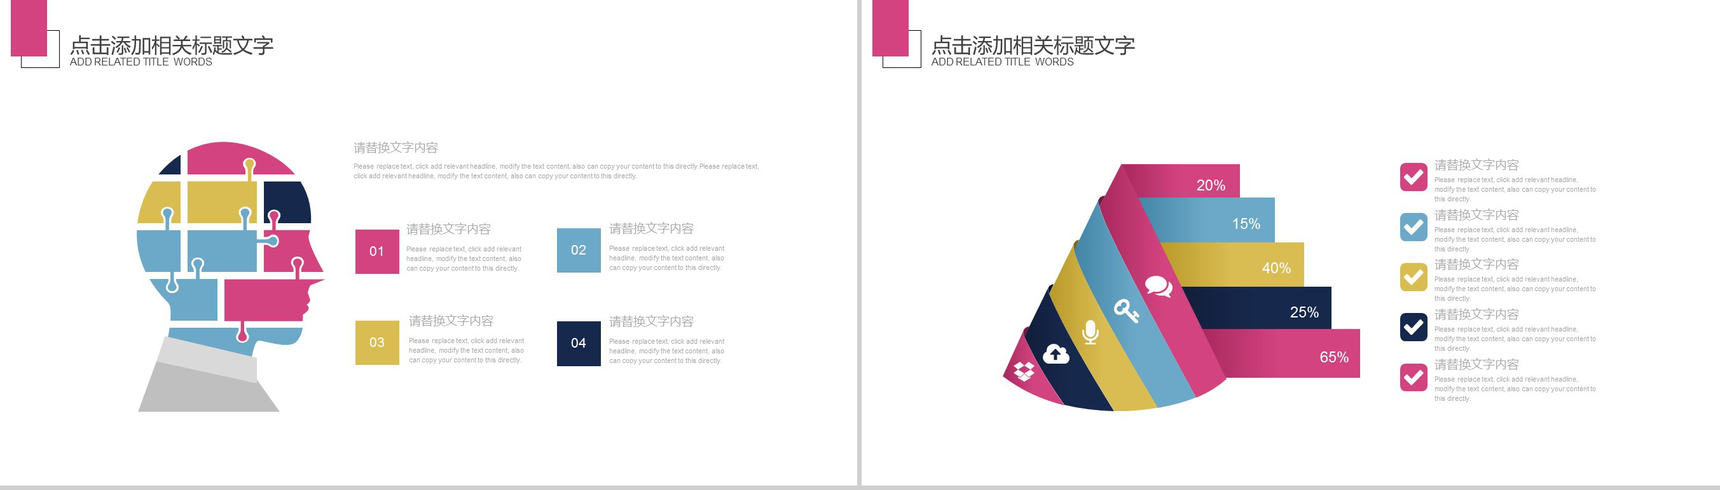 彩色中国元素社团招新PPT模板-10